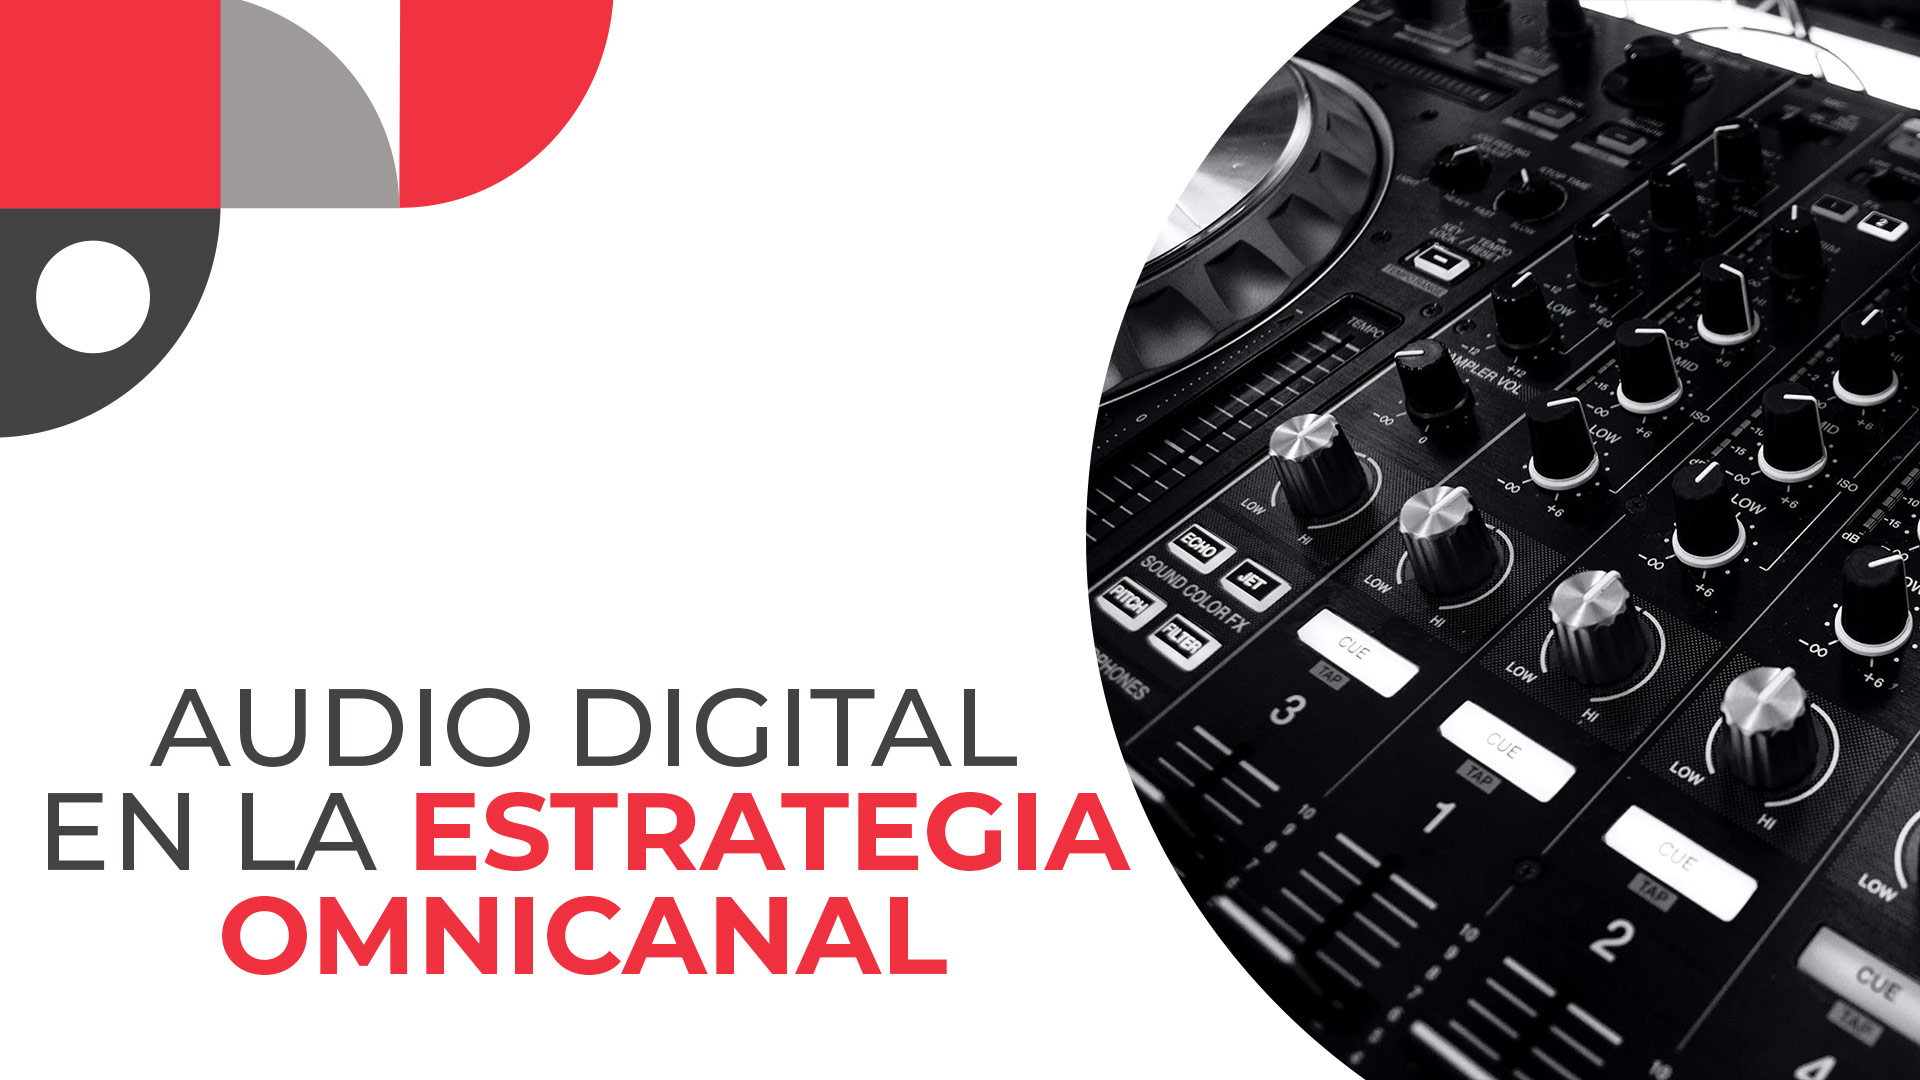 Imagen ilustrativa del curso de Audio Digital en la estrategia Omnicanal